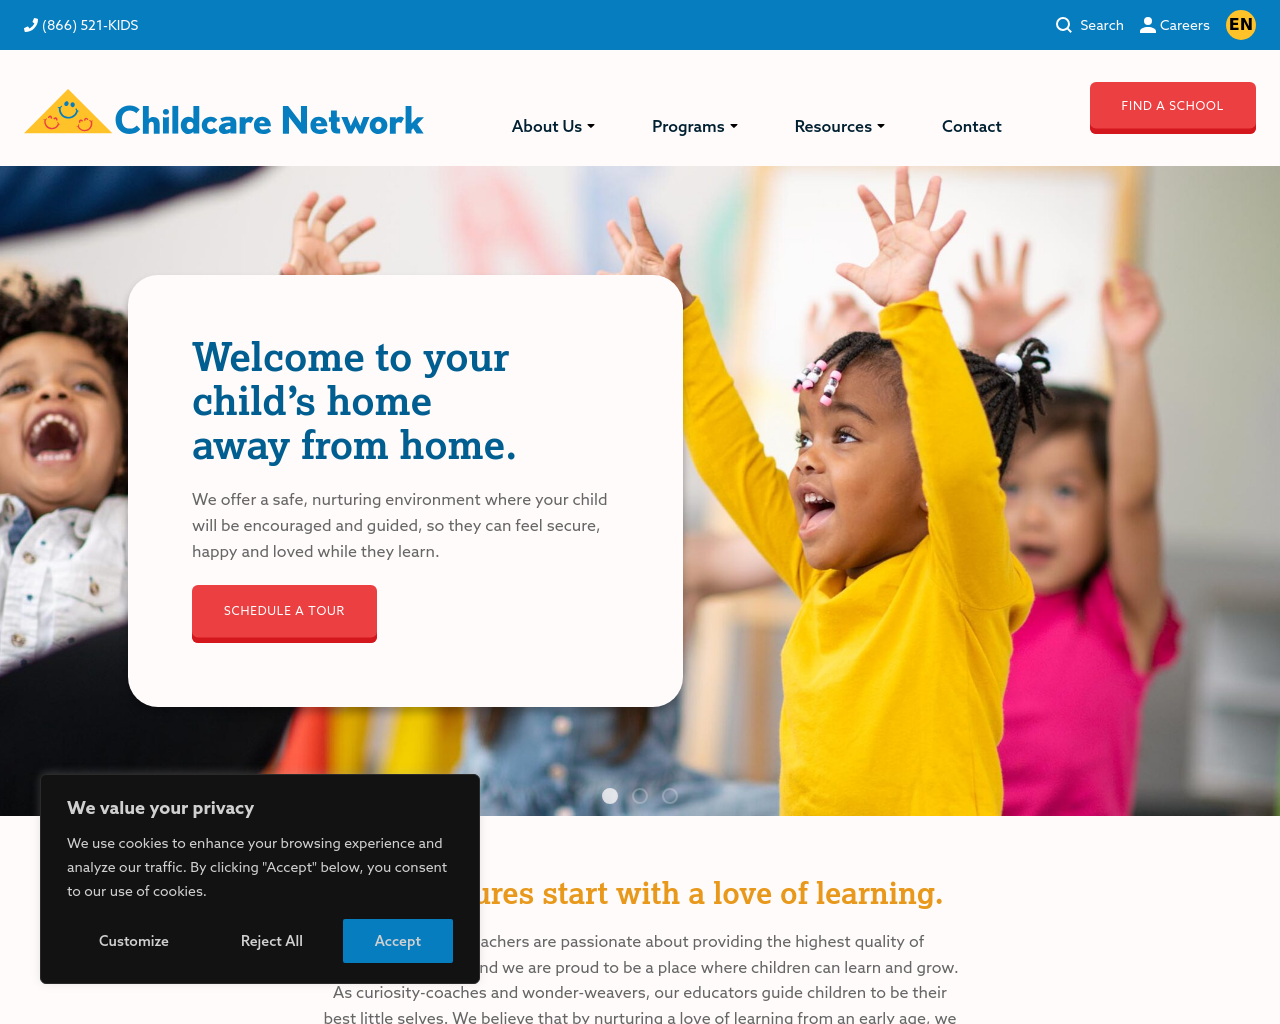 childcarenetwork.com